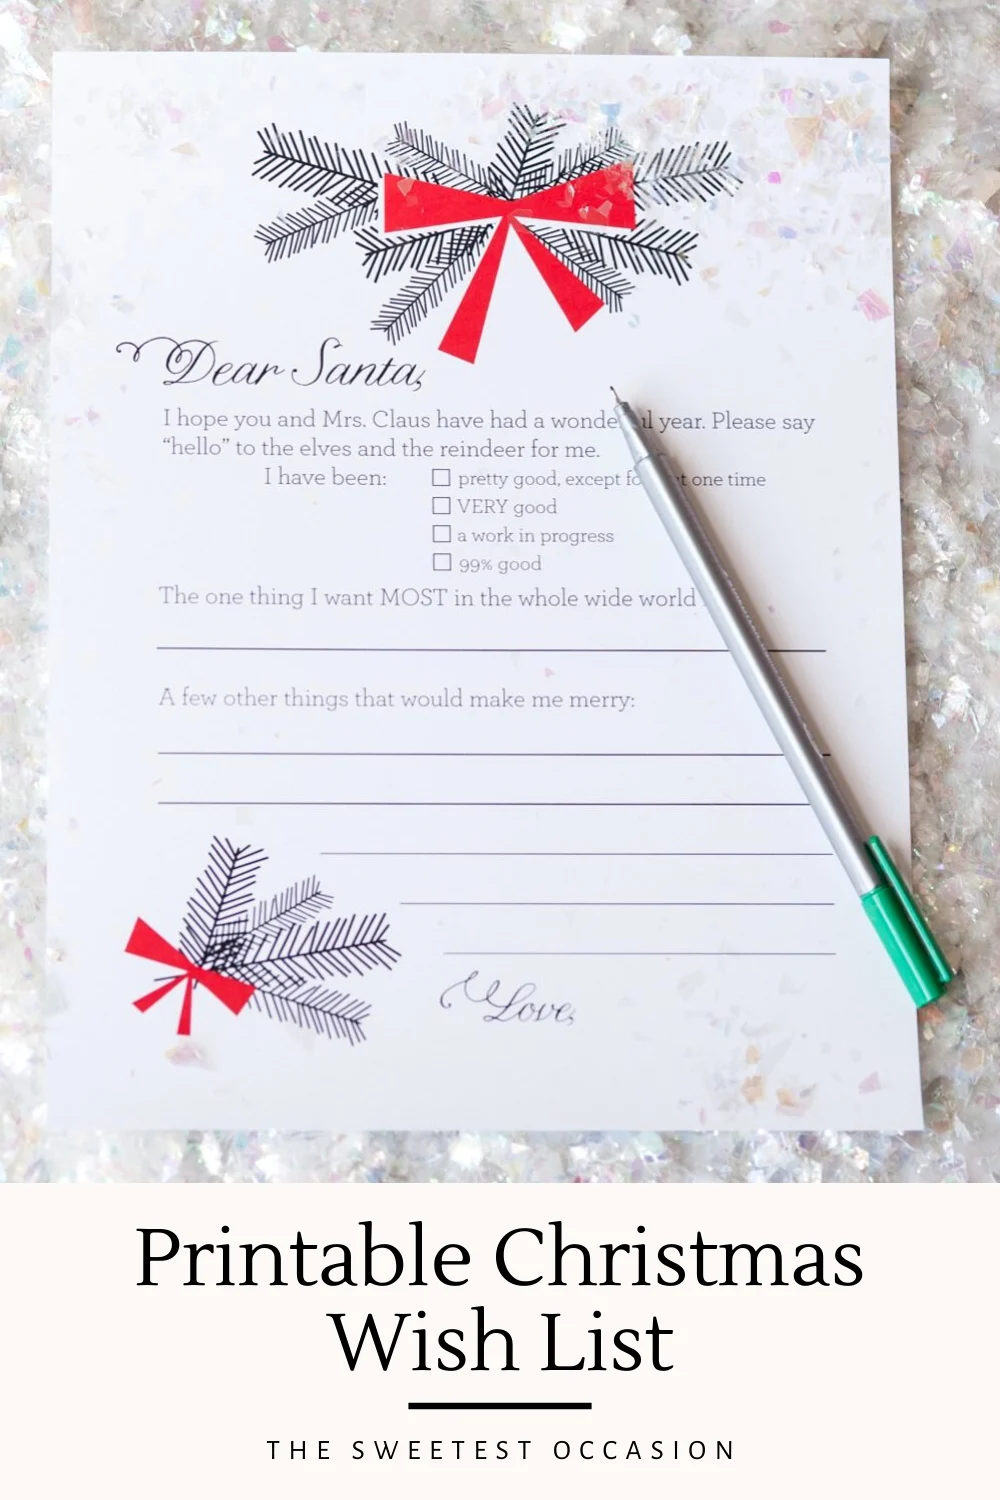 Printable Christmas Wish List Photo